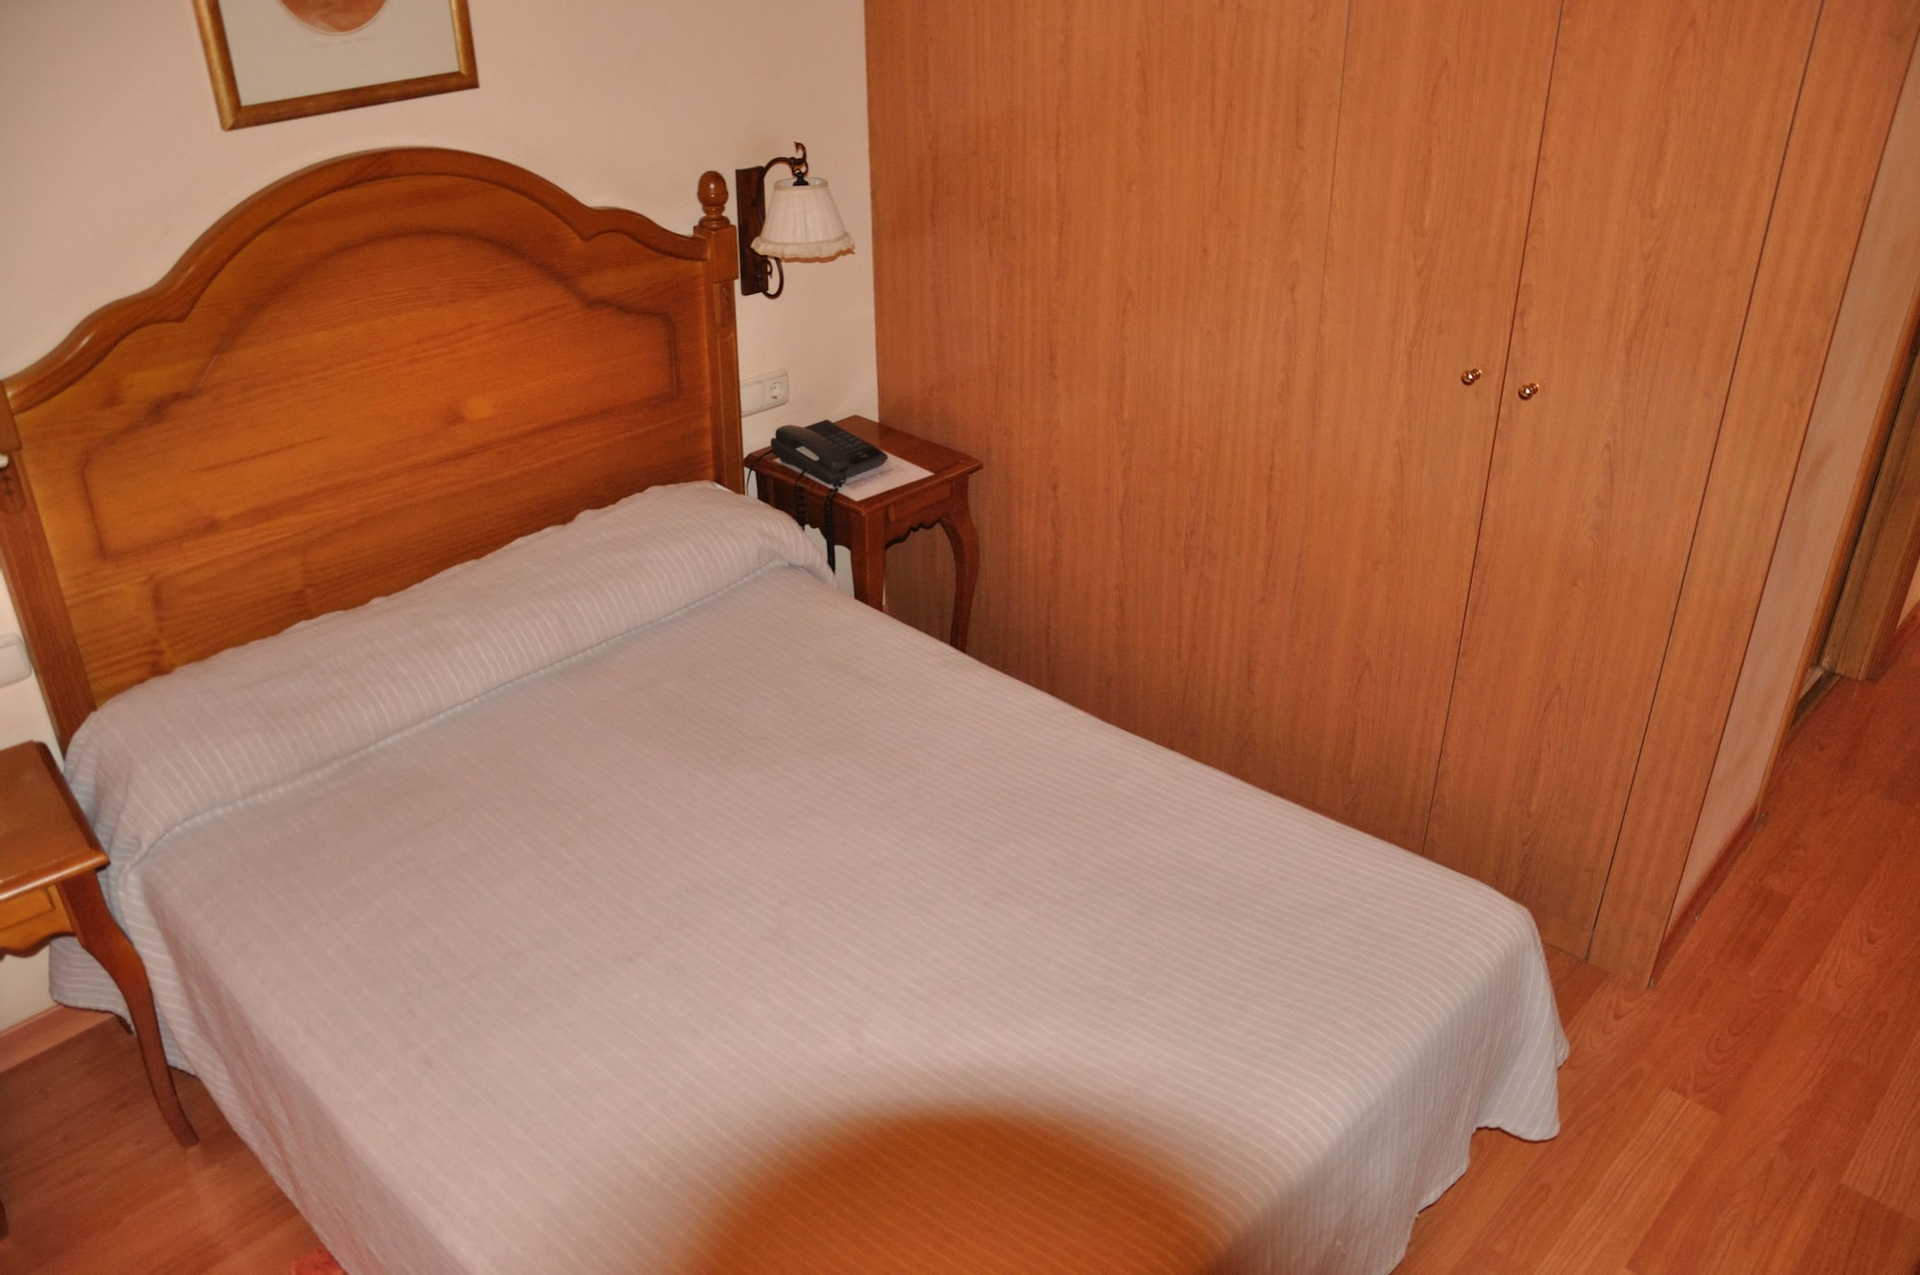 Bedroom 2, Hostal Tafalla, Navarra